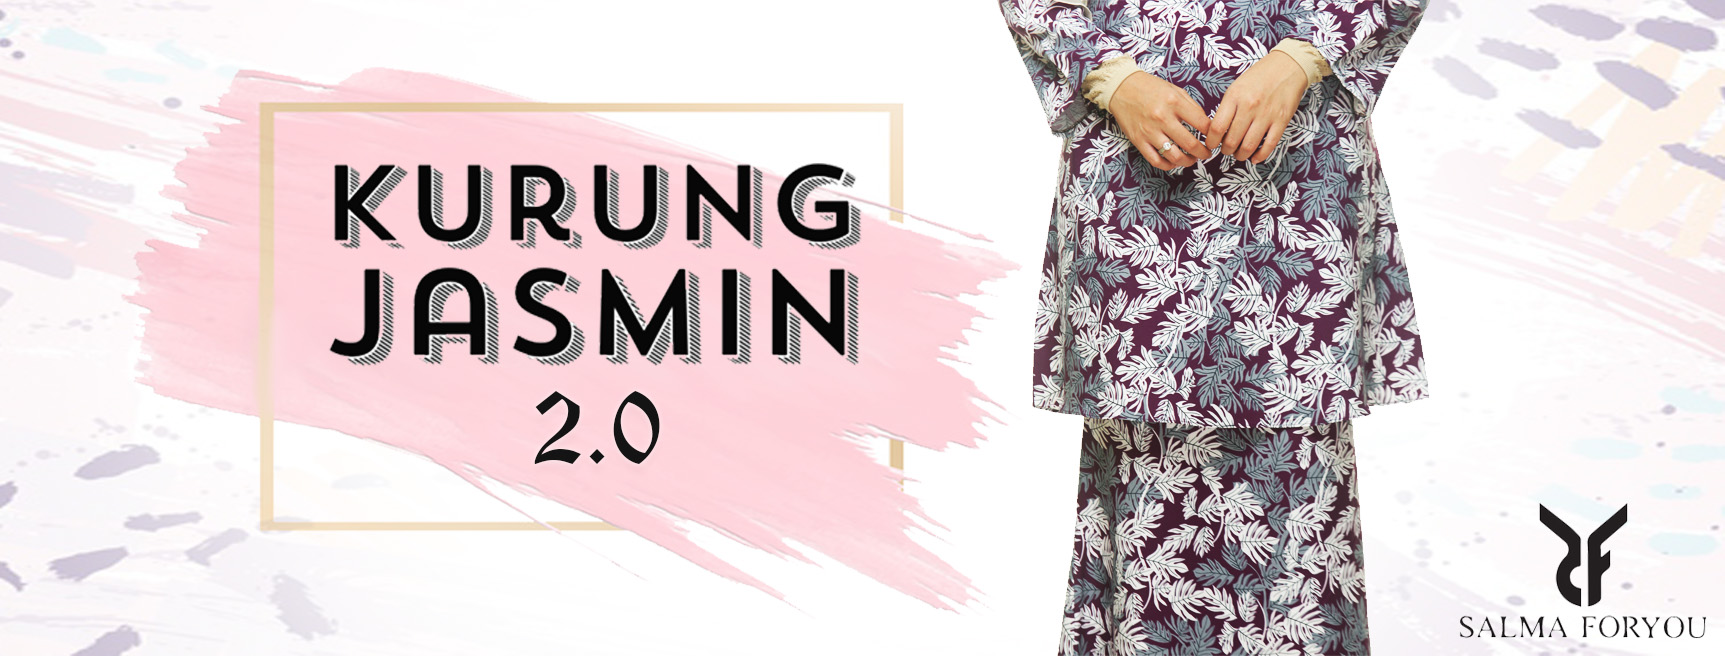 kurung-jasmin-website-cover2